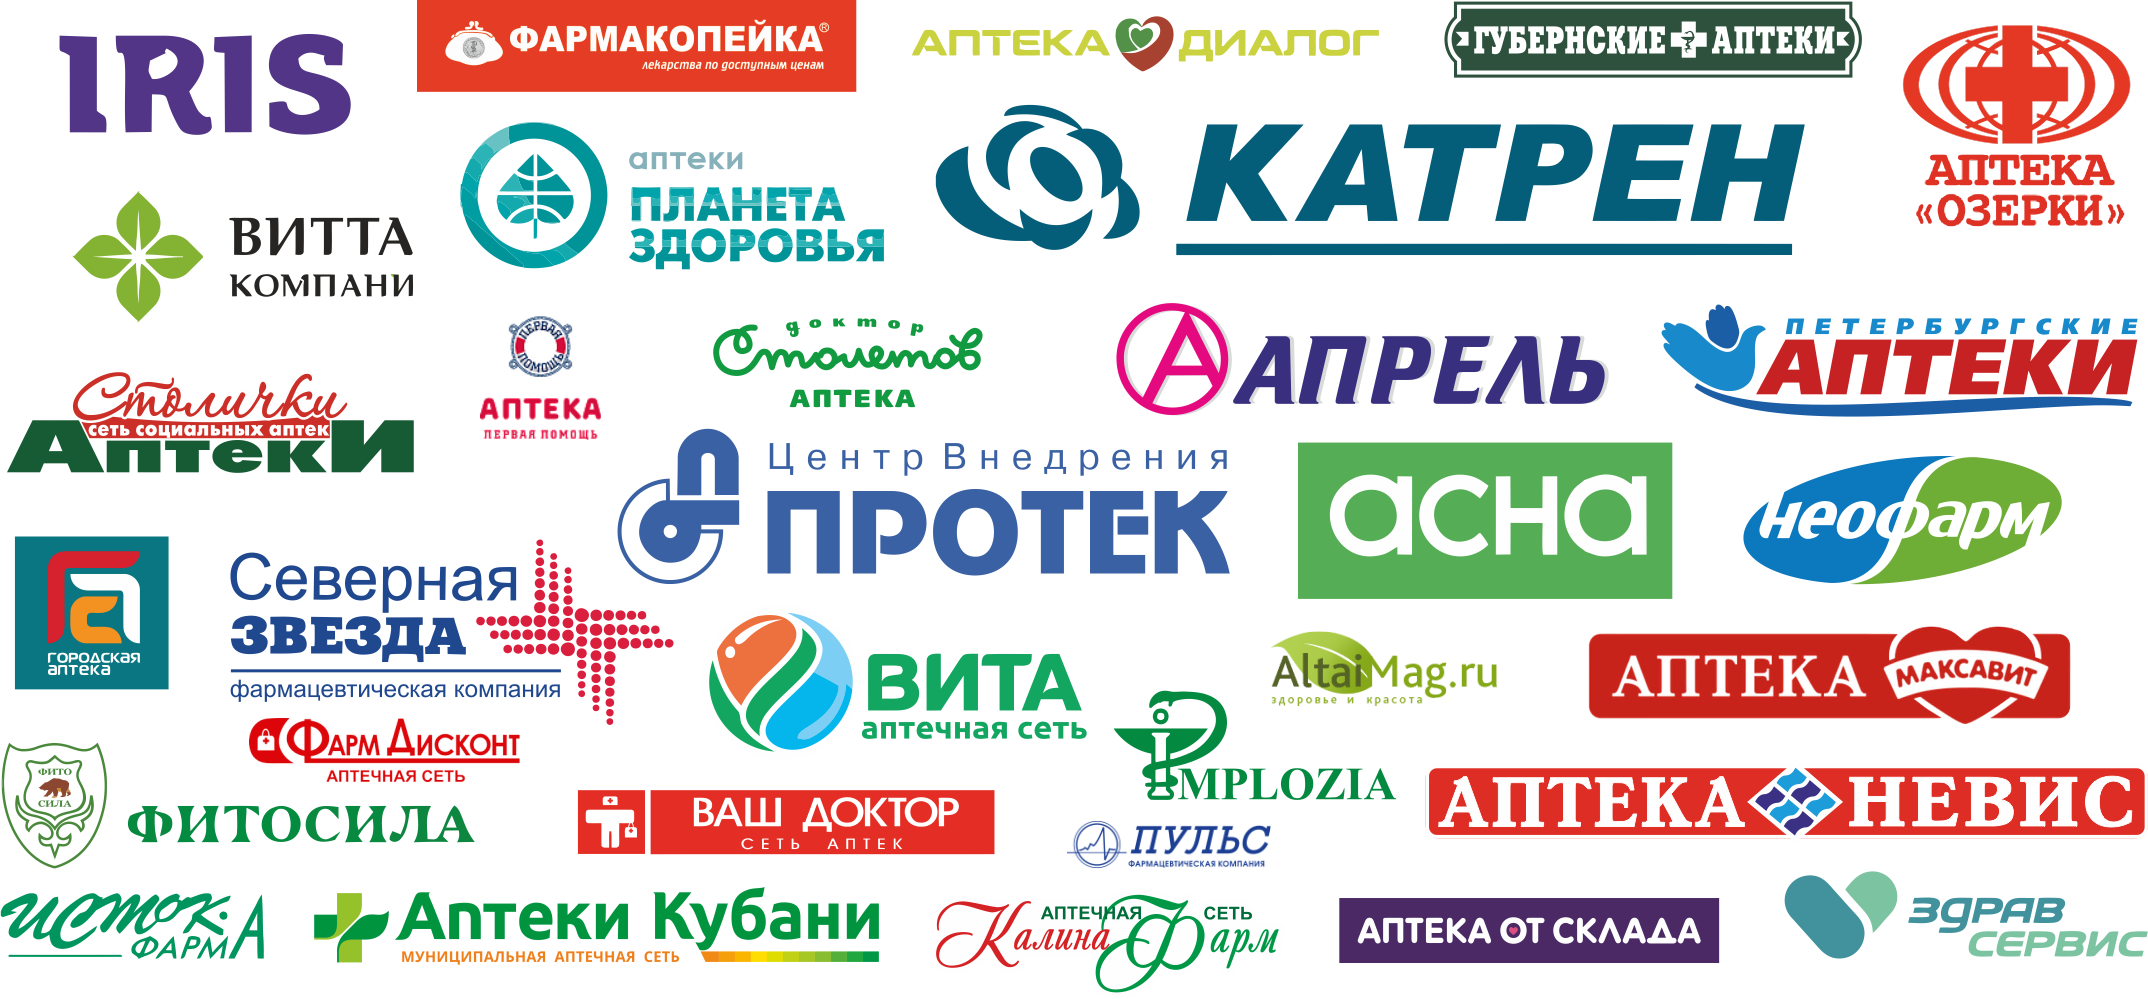 Производитель торговая сеть. Российские торговые марки. Логотипы аптечных сетей. Аптека бренд. Логотип торговой компании.